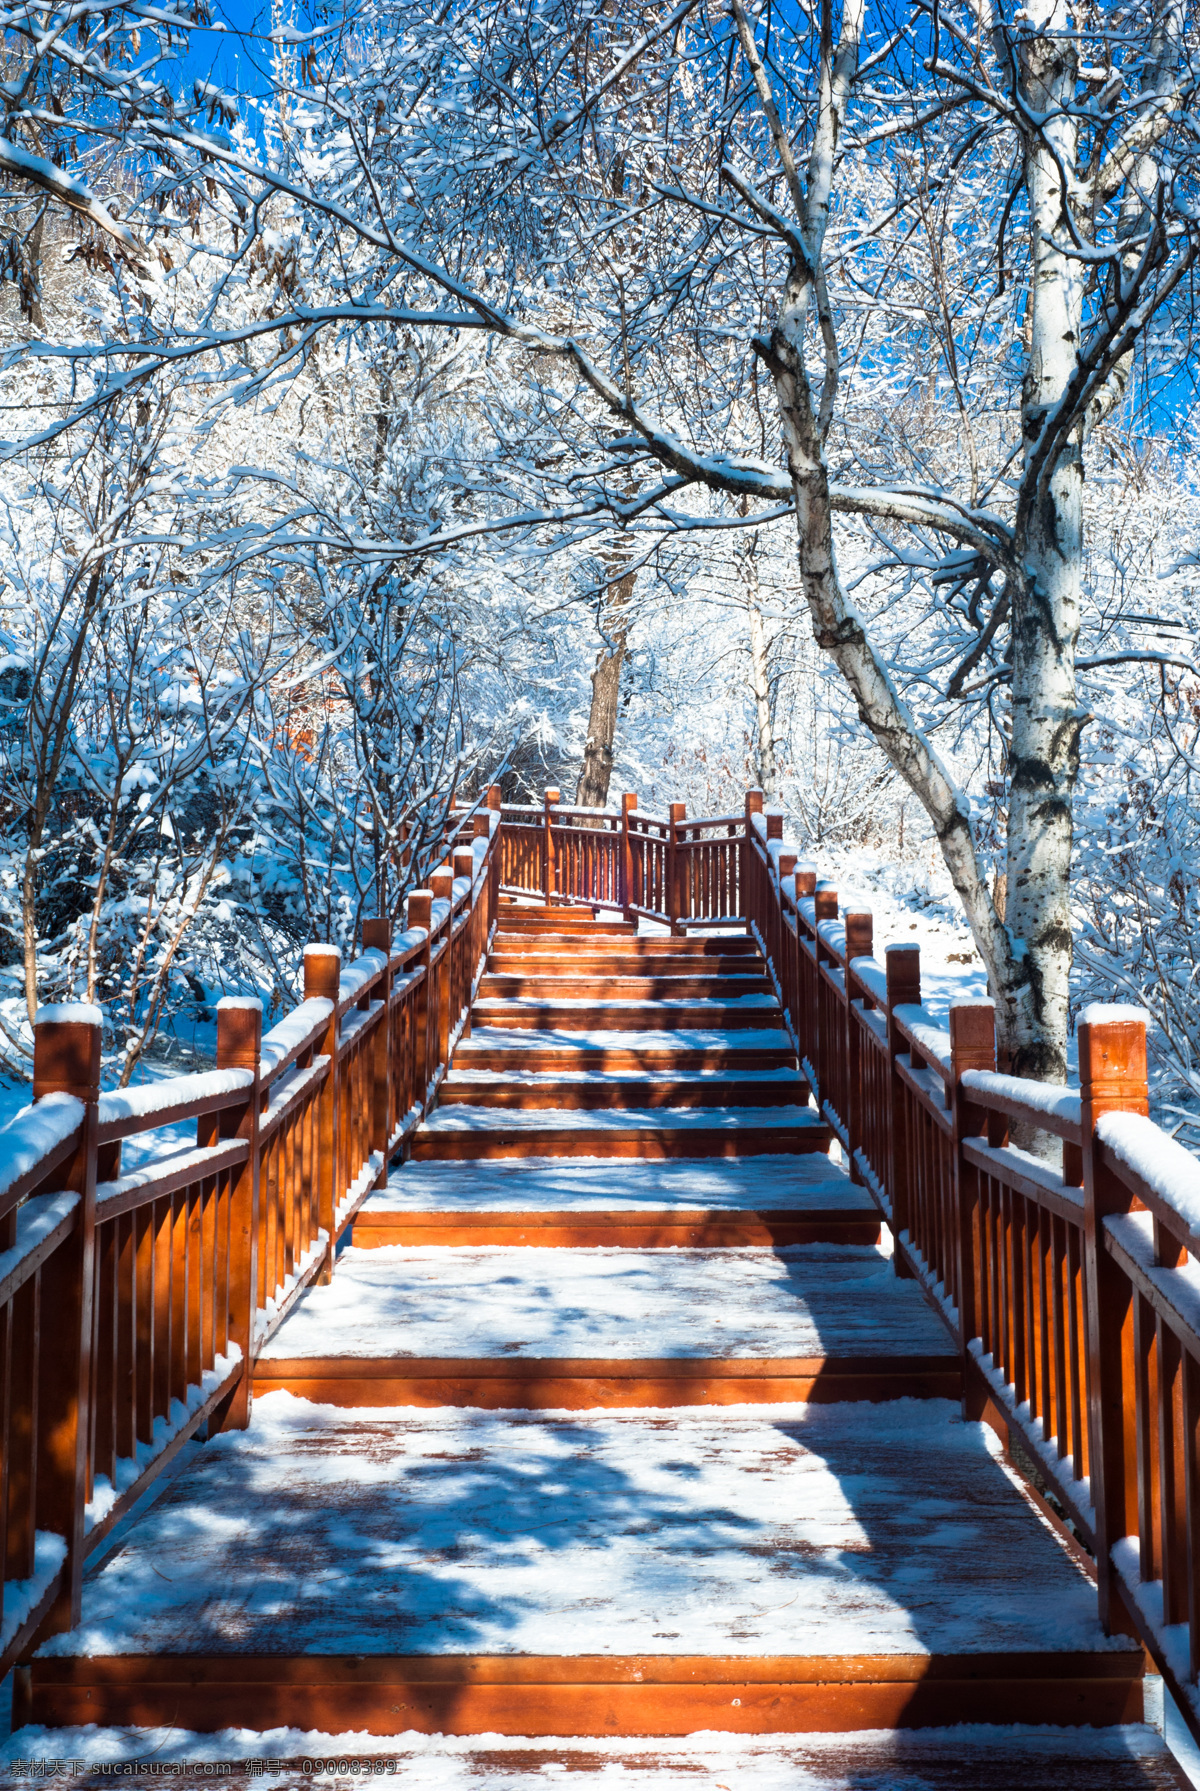 冬雪 冬季 登山 步道 台阶 森林 蓝天 雪景 自然景观 自然风景